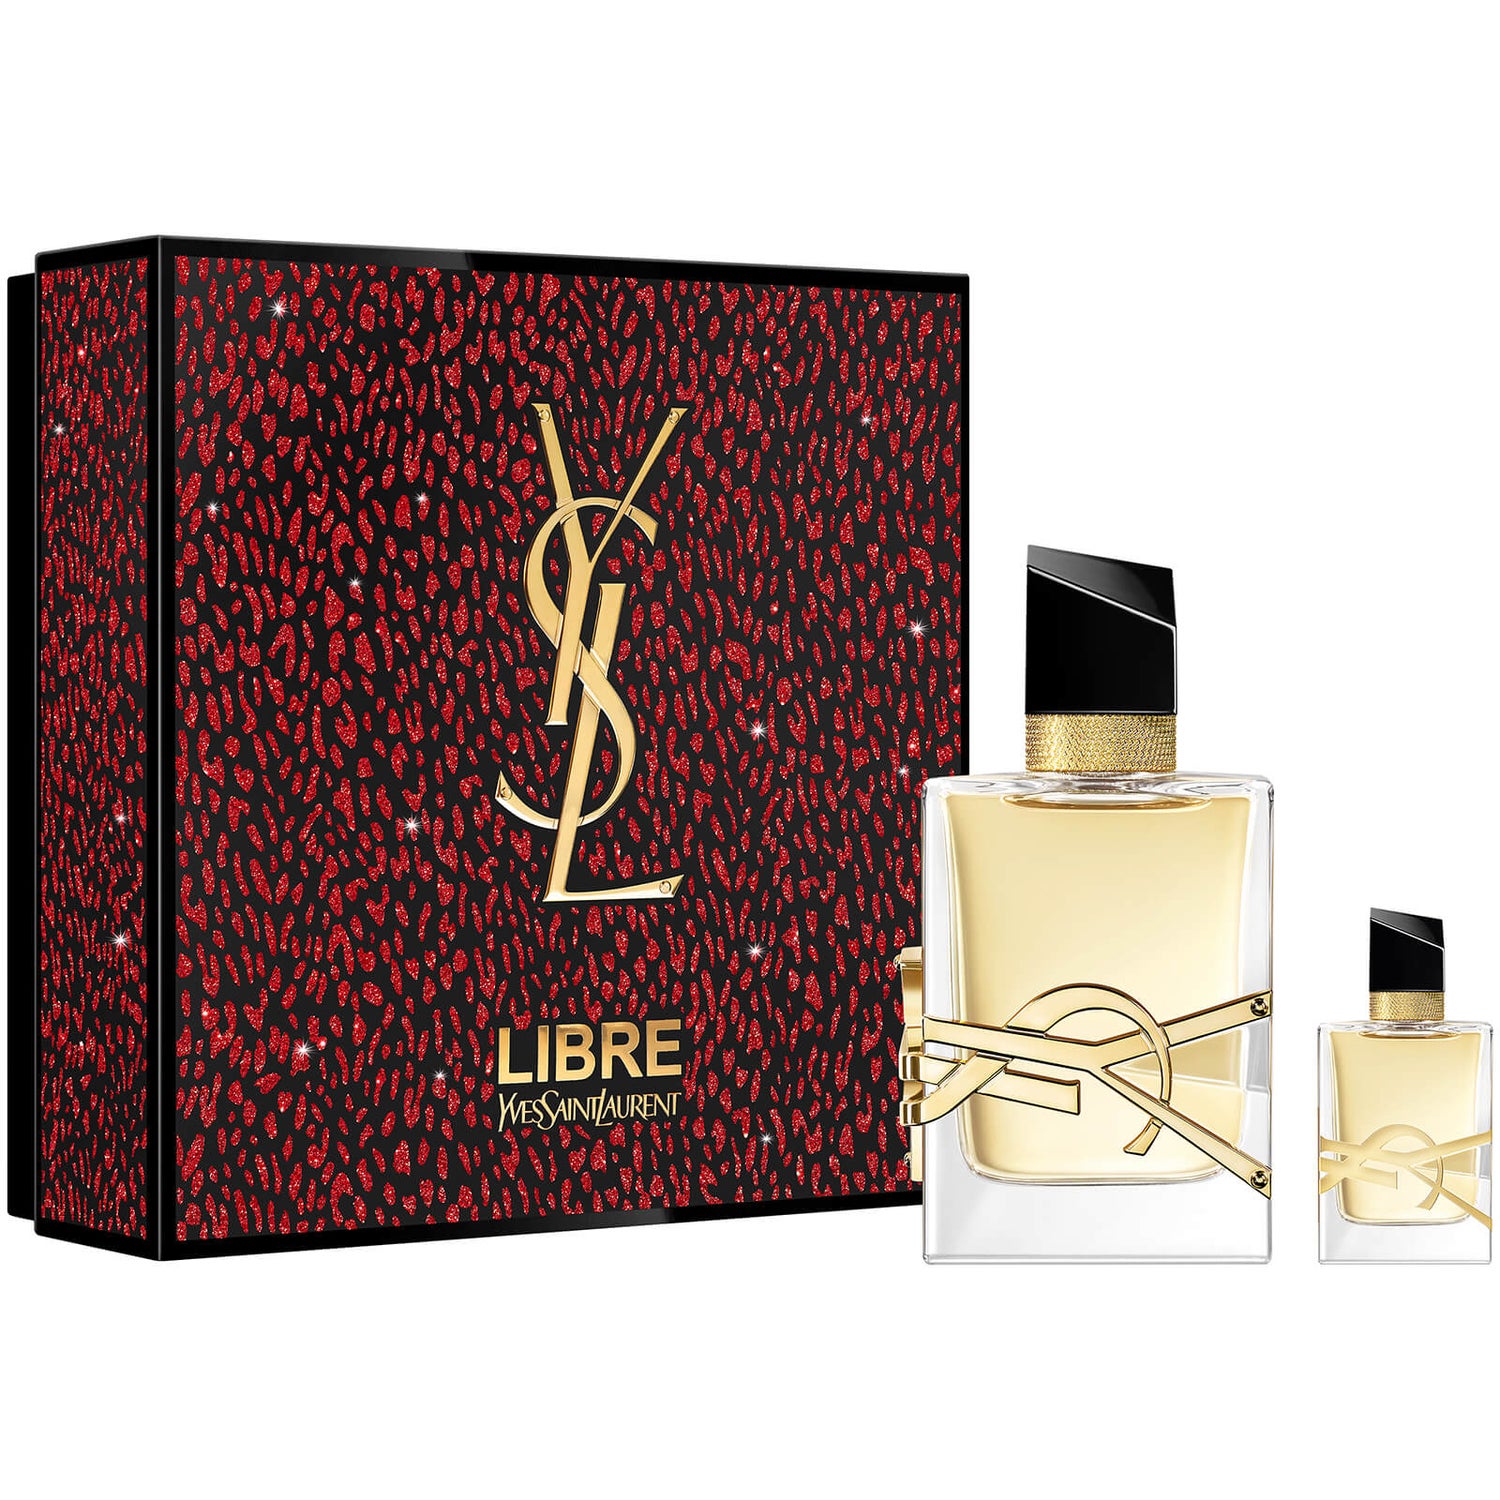 Yves Saint Laurent Libre Eau de Parfum 50ml Gift Set (Worth £86.00